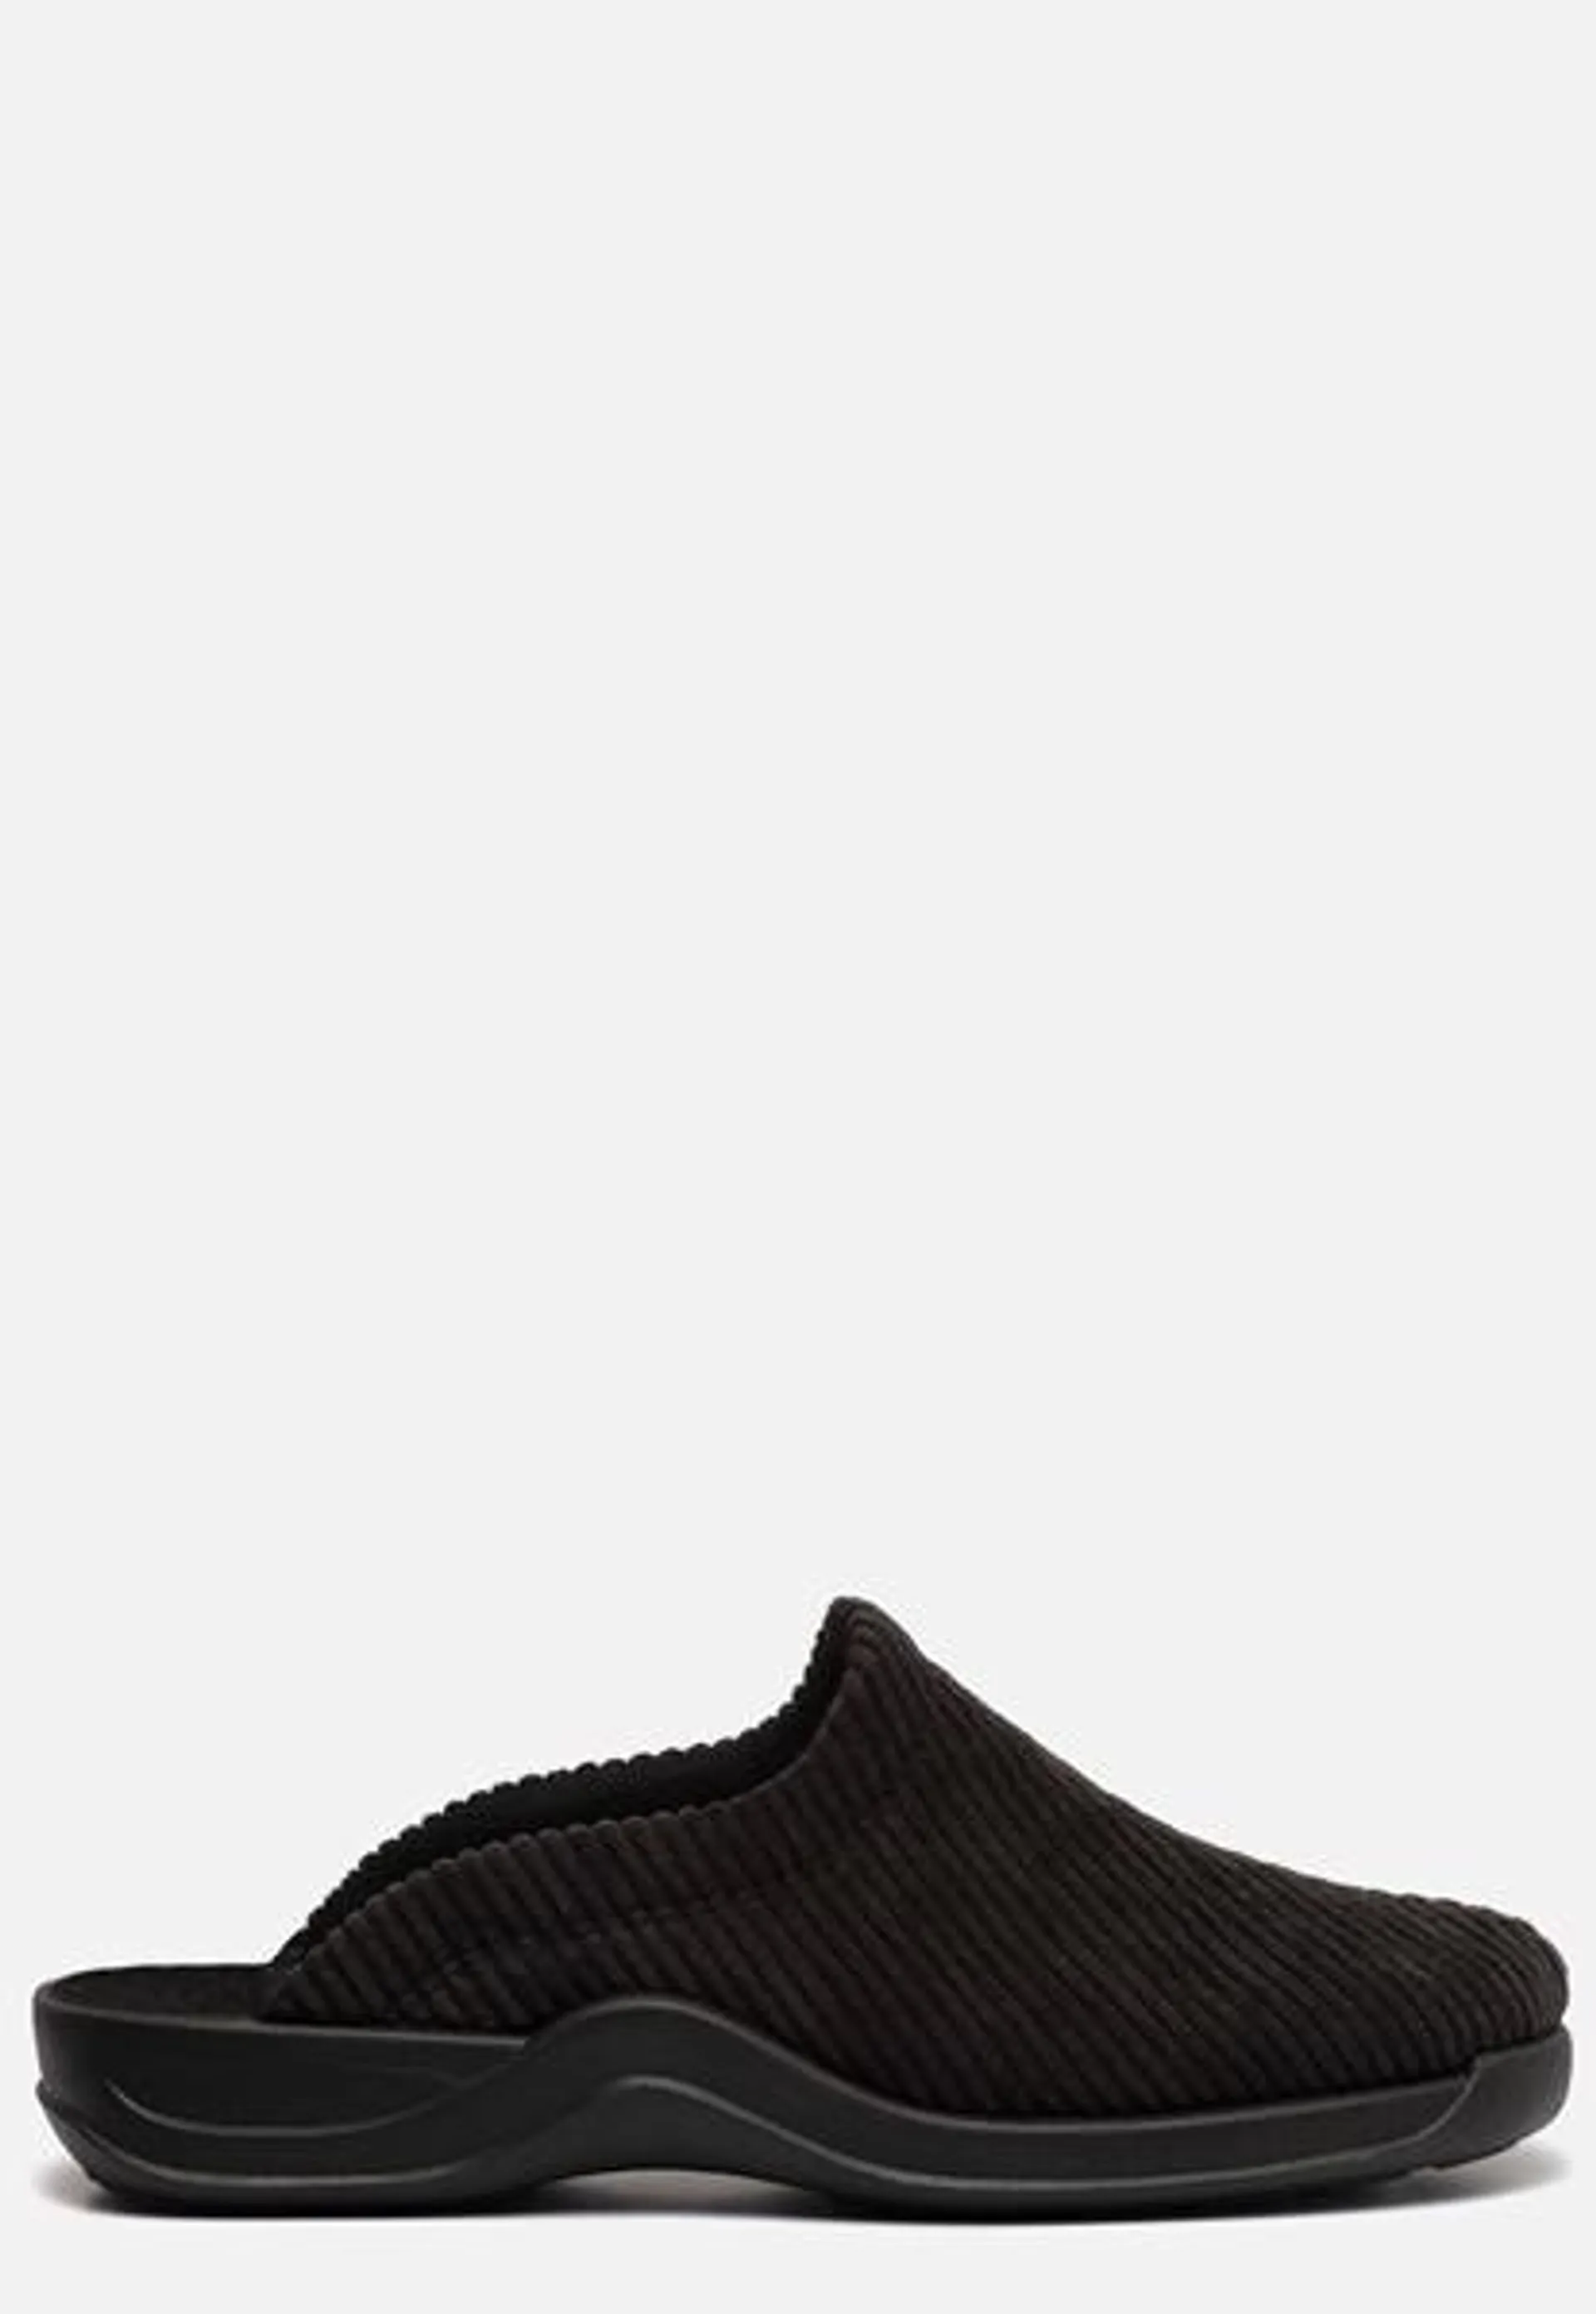 Rohde Pantoffels zwart Textiel 370434